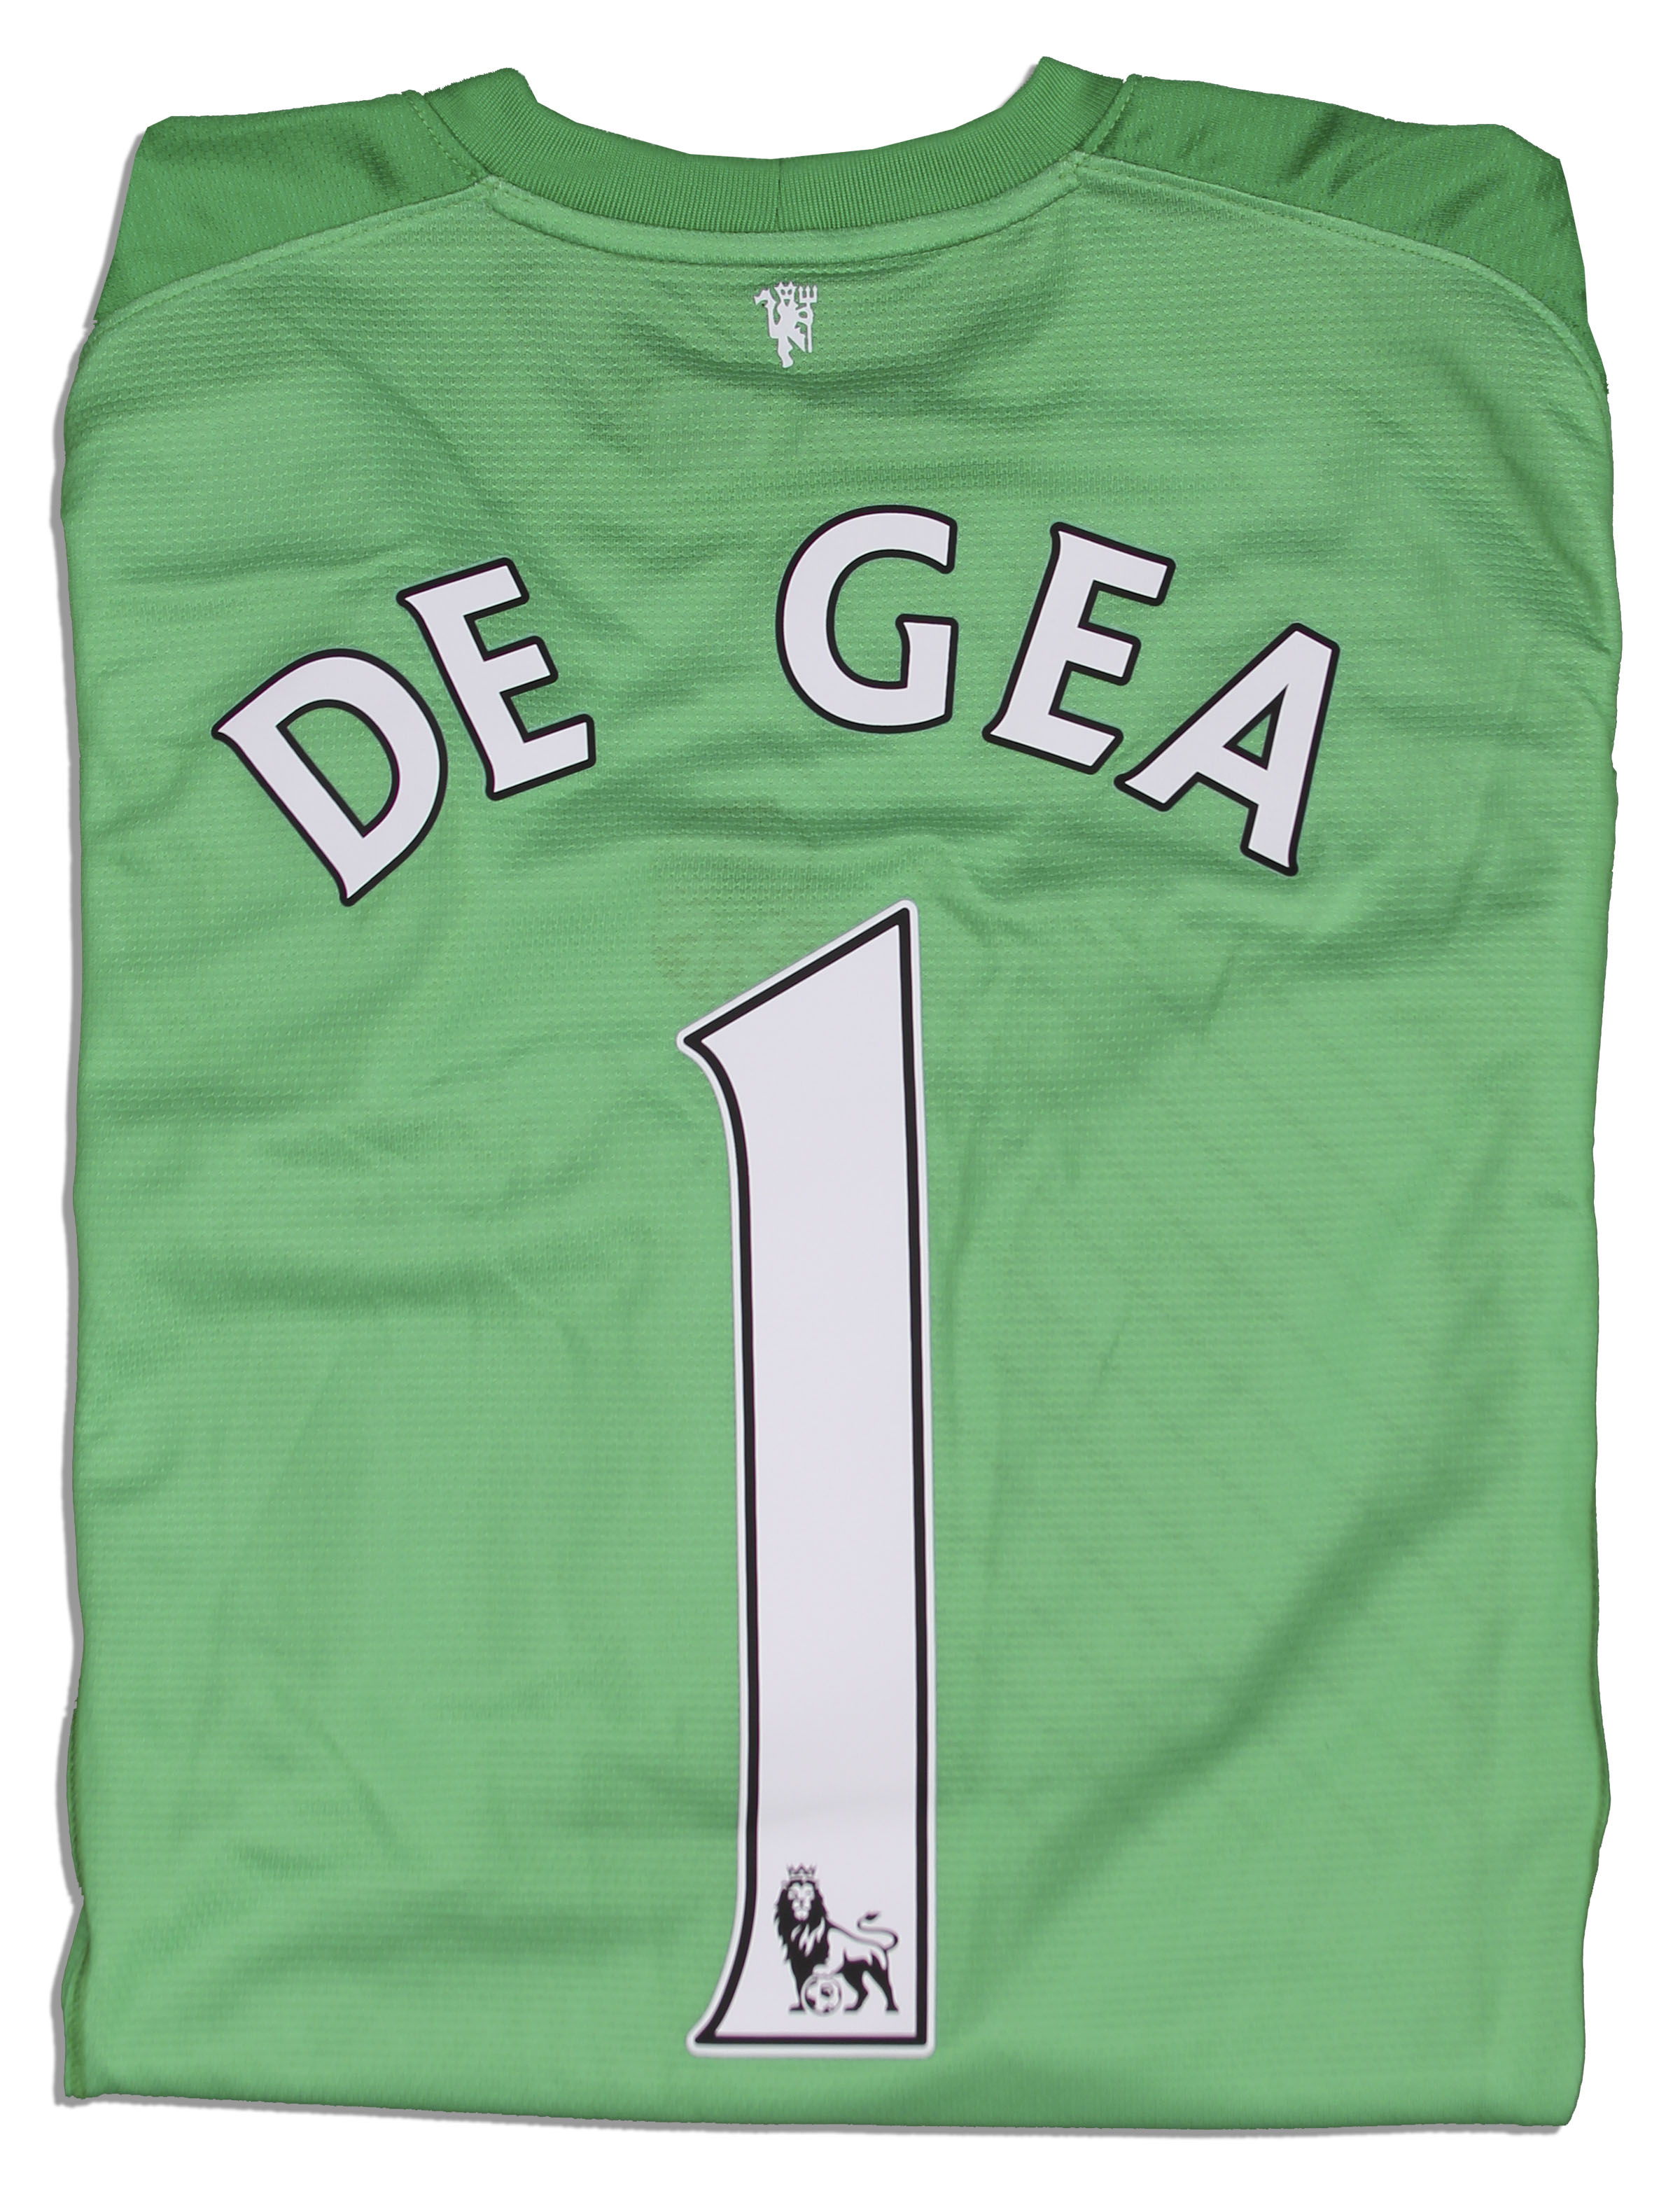 De Gea Jersey Number : Lot Detail - David DeGea Match Worn Manchester